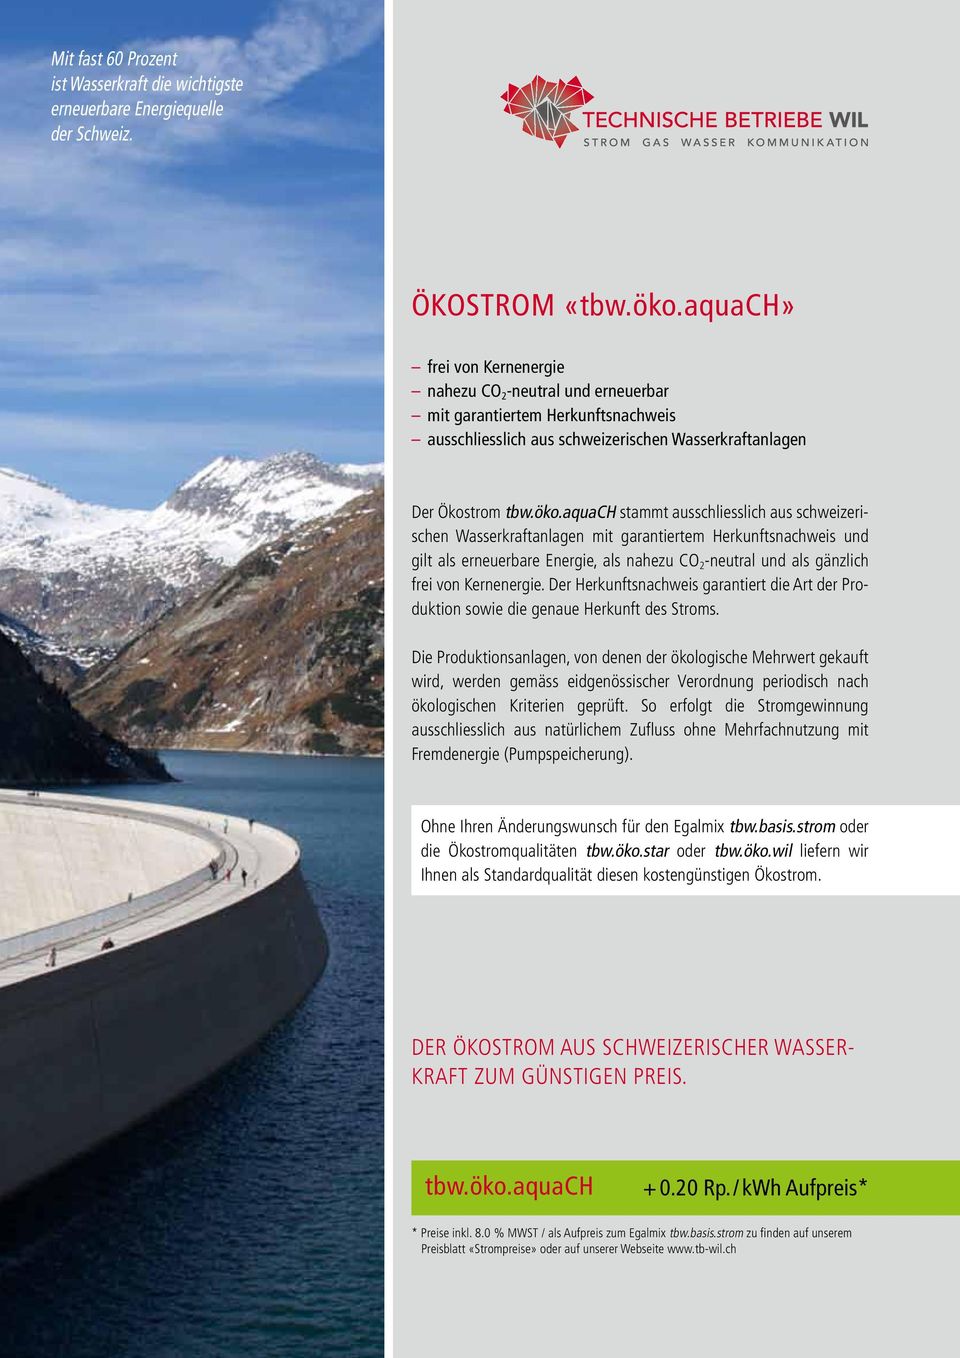 aquach stammt ausschliesslich aus schweizerischen Wasserkraftanlagen mit garantiertem Herkunftsnachweis und gilt als erneuerbare Energie, als nahezu CO 2 -neutral und als gänzlich frei von